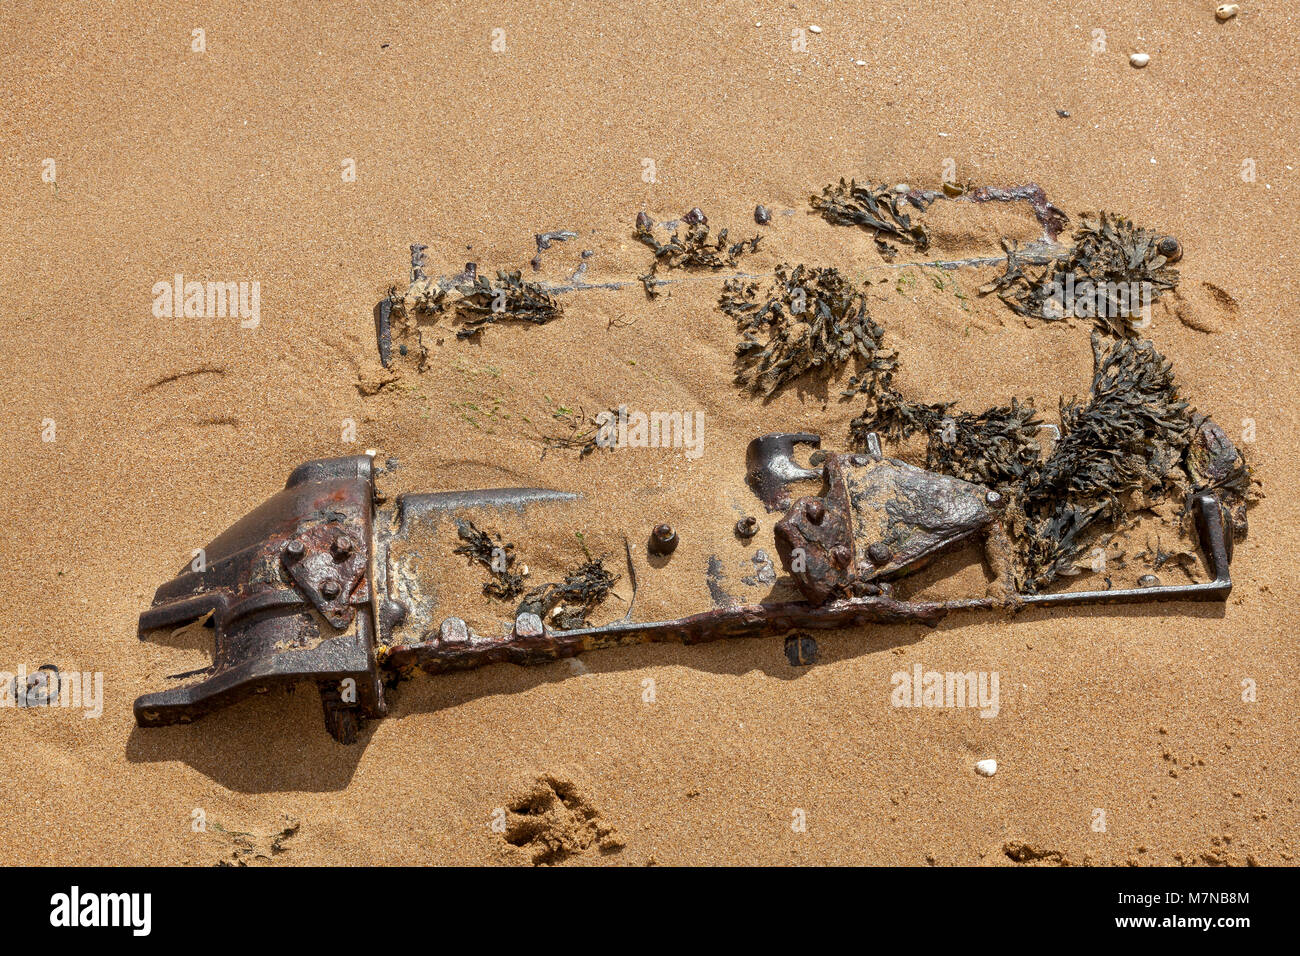 Un grand objet métallique de la rouille sur la plage, à moitié enfoui dans le sable, Broadstairs, Kent, UK Banque D'Images